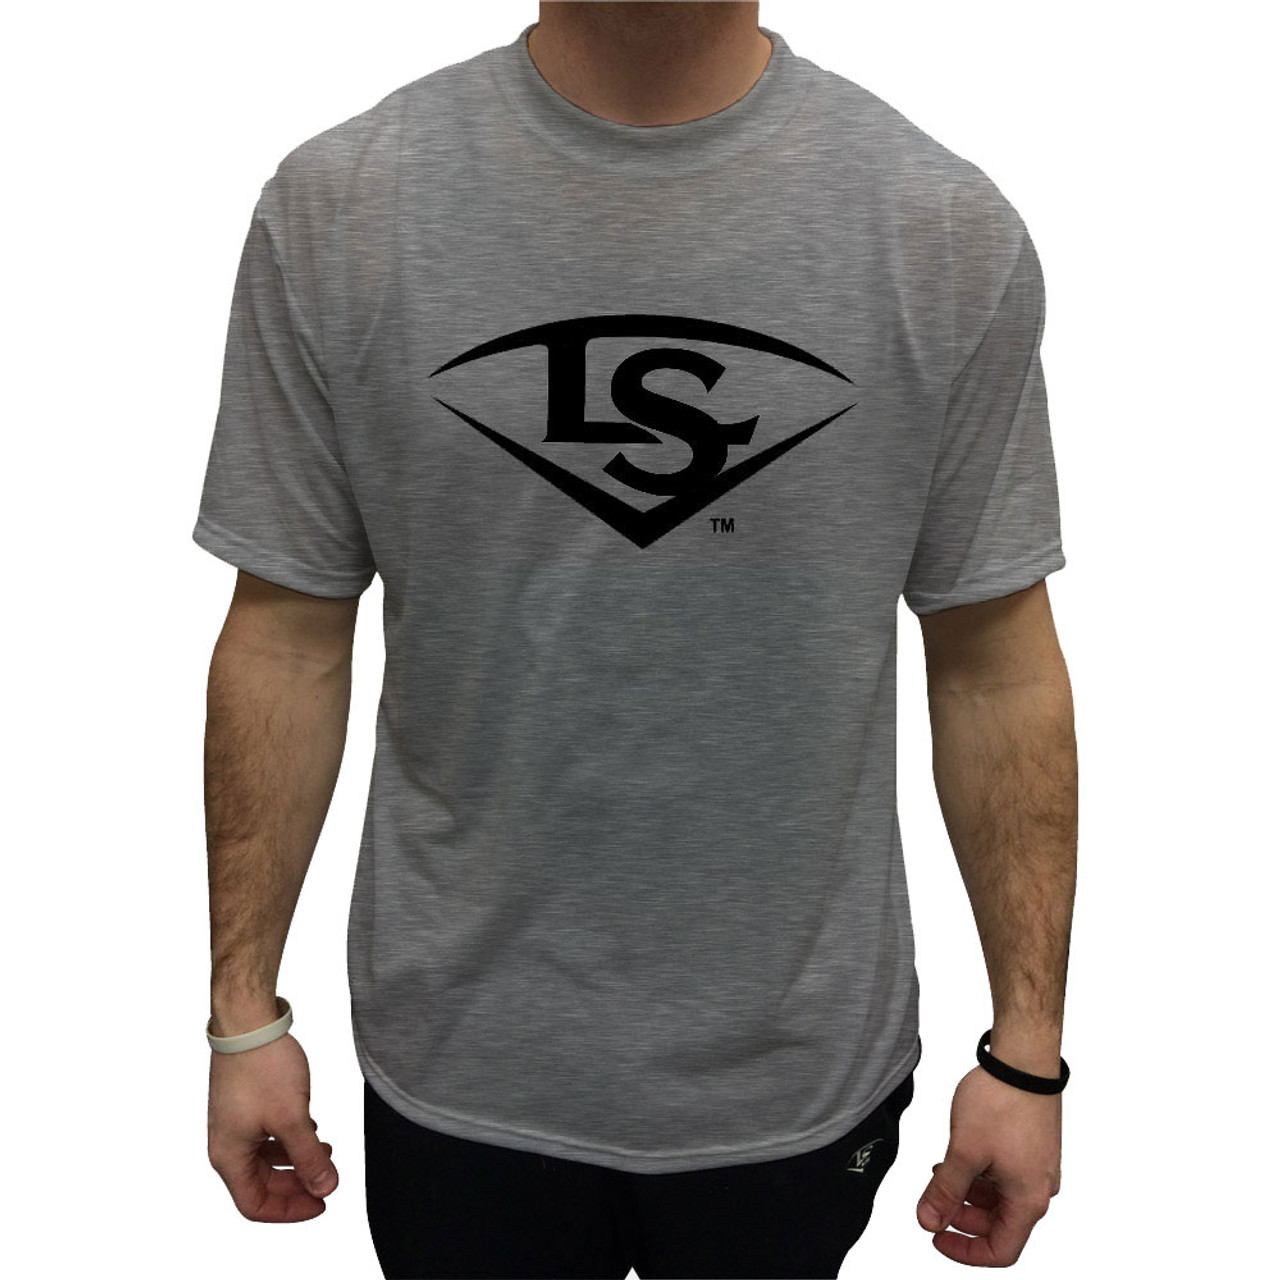 Louisville Slugger Boys Baseball Jersey Shirt Size Youth Small 8/10